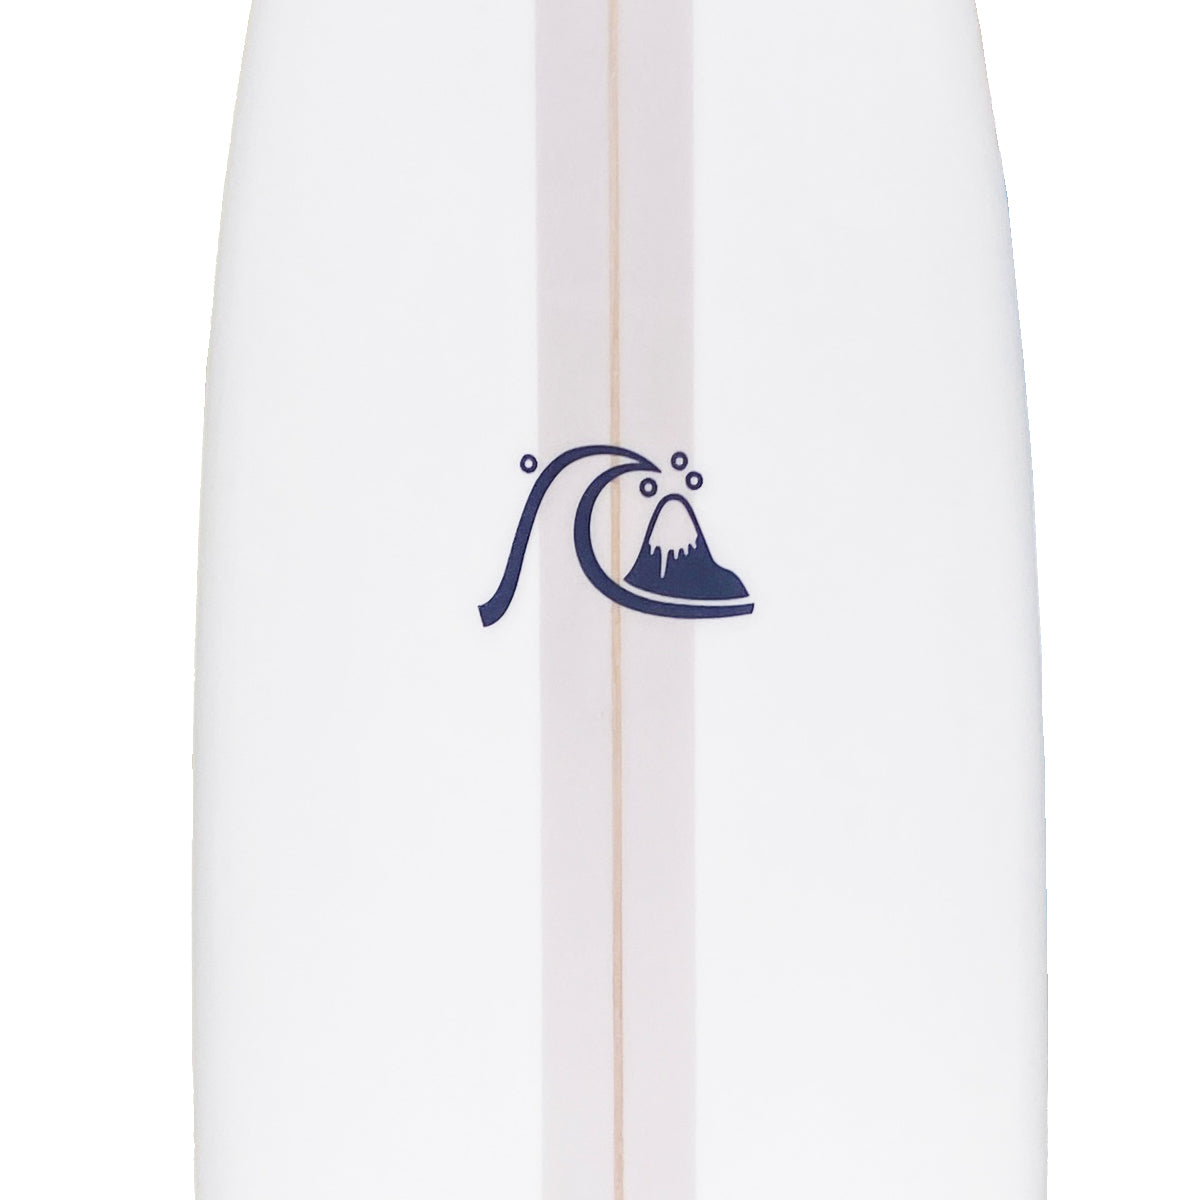 QS BREAK 7'6 SURFBOARD